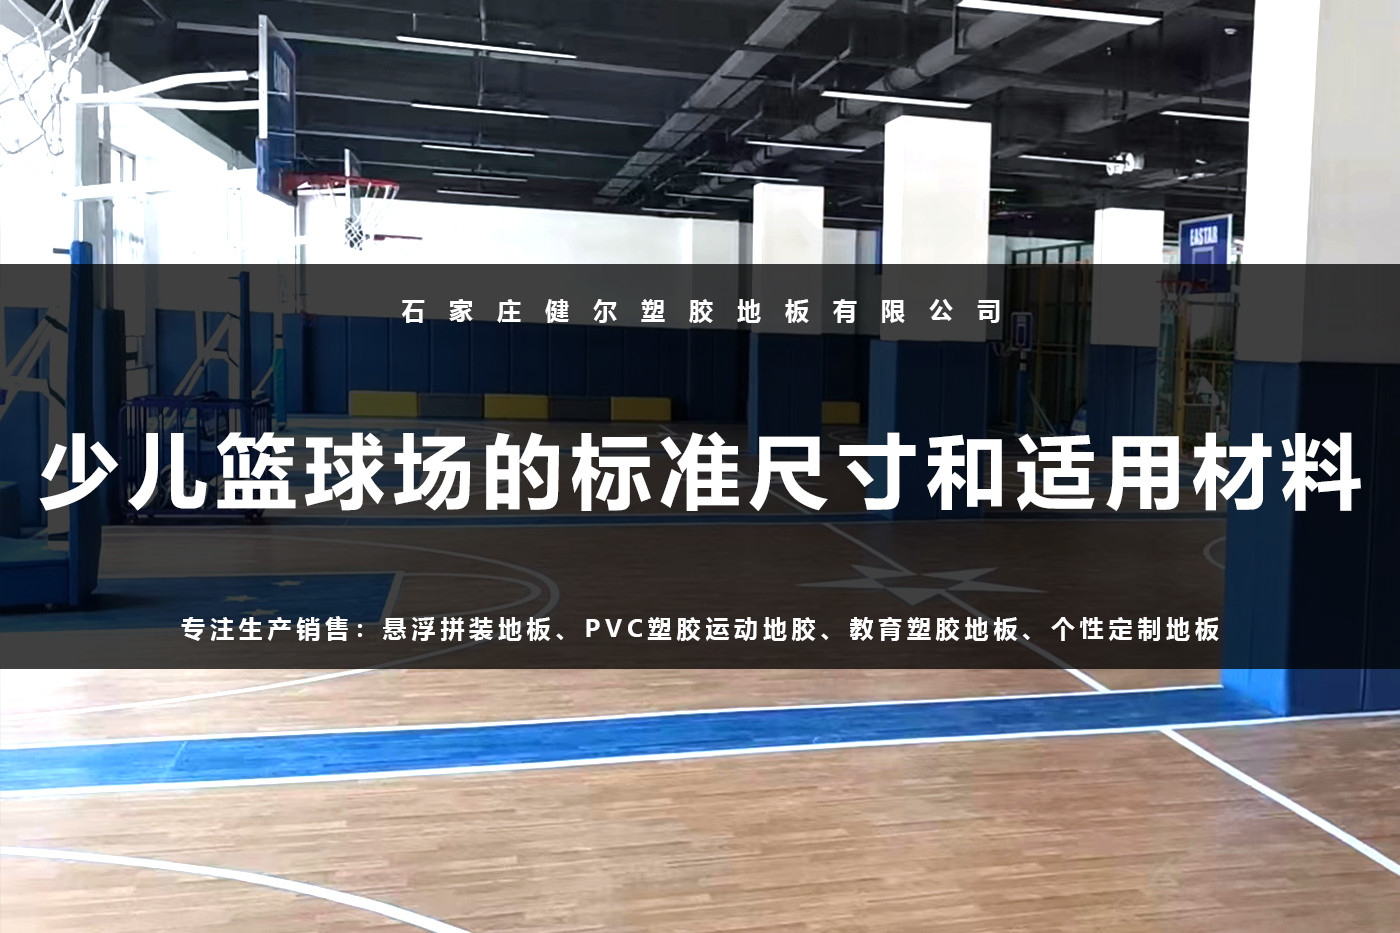 少儿篮球场的标准尺寸和适用材料.jpg